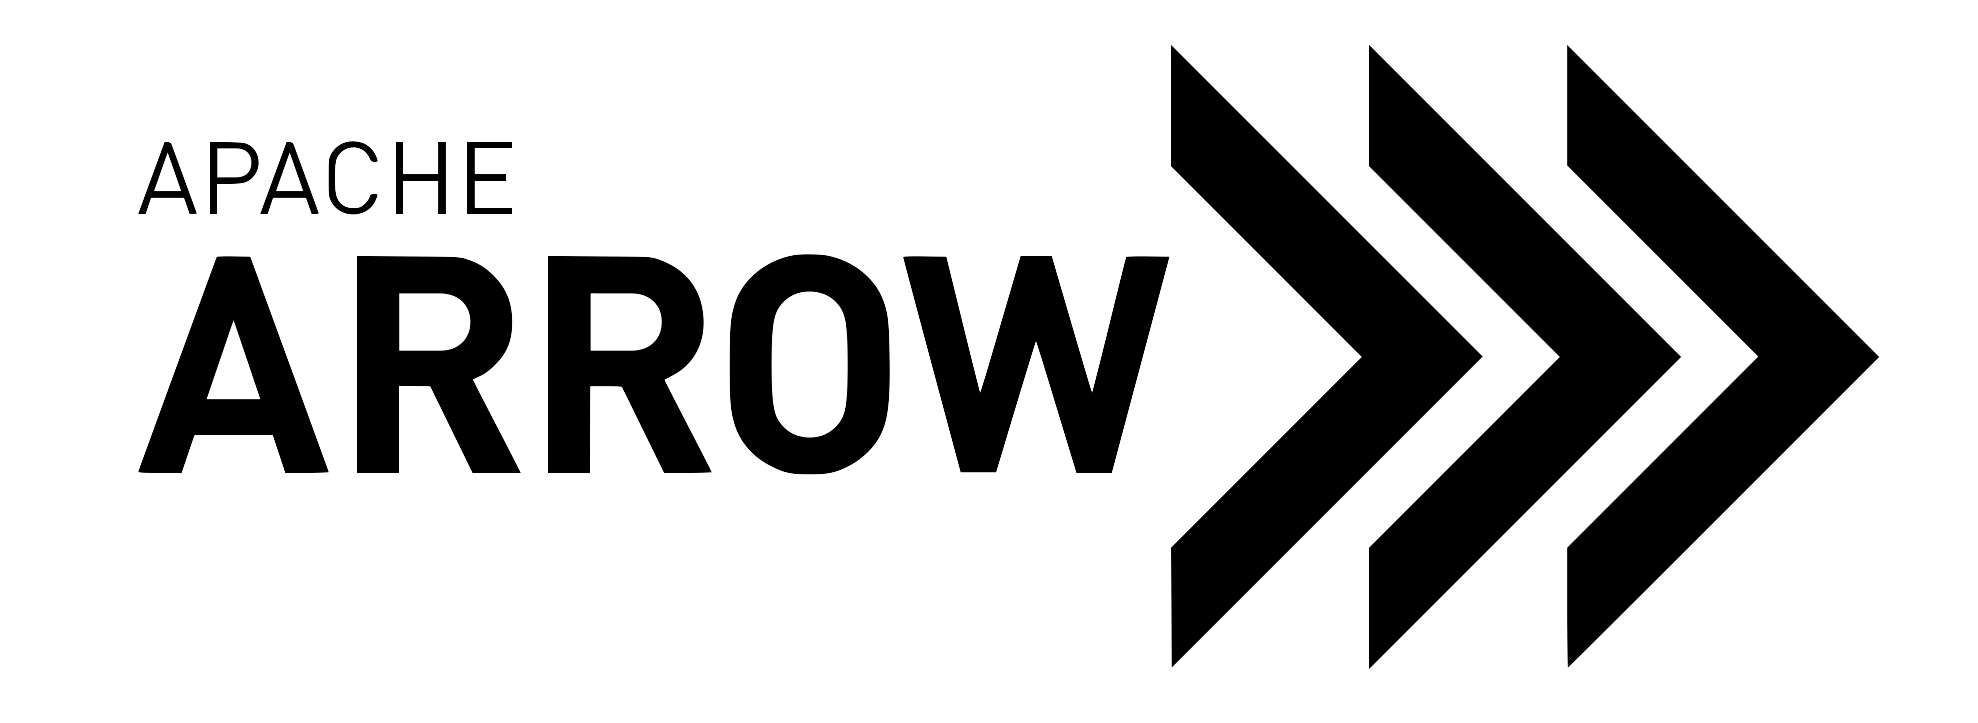 Apache Arrow Framework Logo